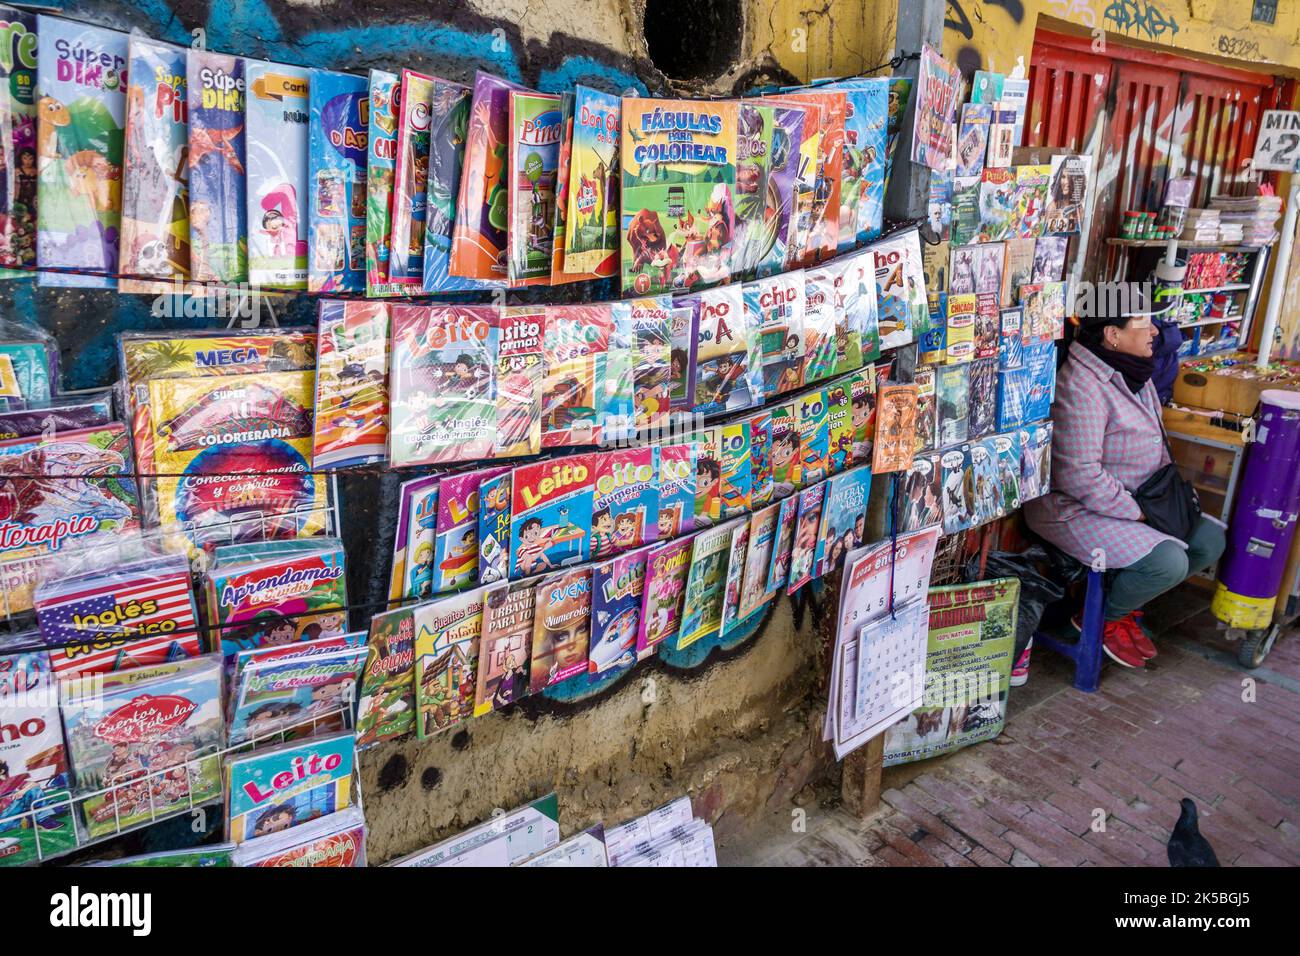 Bogota Colombie,Veracruz Calle 16 affichage de trottoir vendeur livres images livres pour enfants illustrés langue espagnole, près de Santander Park Parq Banque D'Images